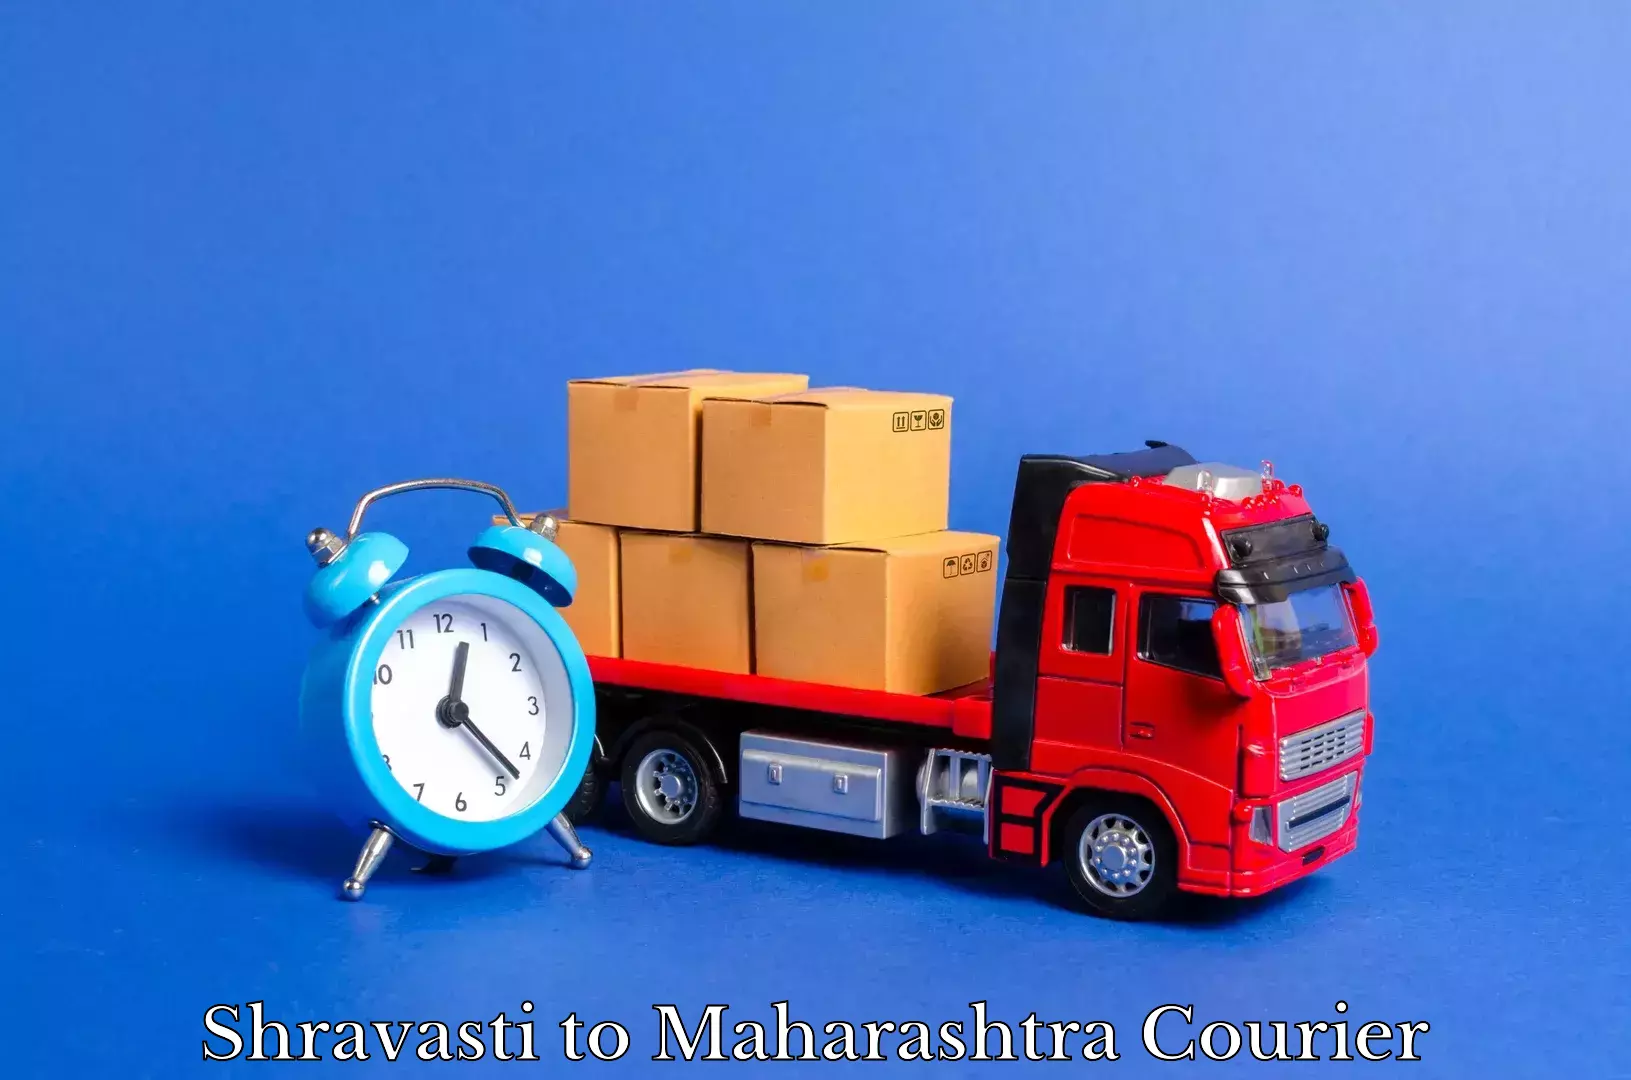 Professional furniture movers Shravasti to Talegaon Dabhade